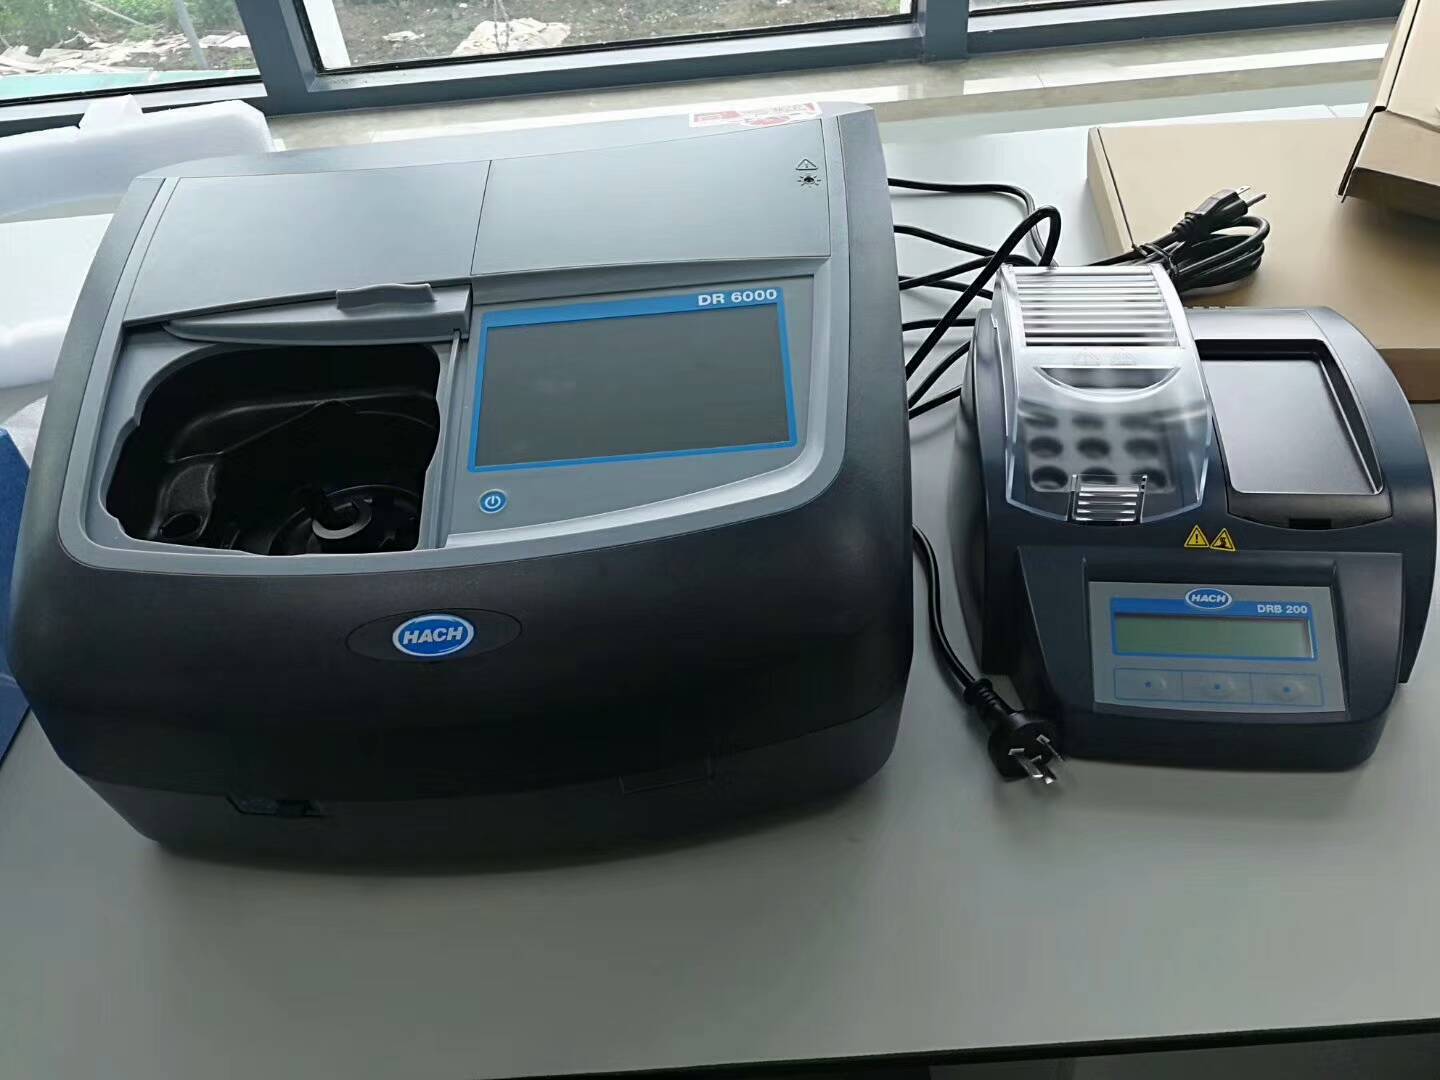 thiết bị phân tích nước hãng Hach- máy quang phổ để bàn